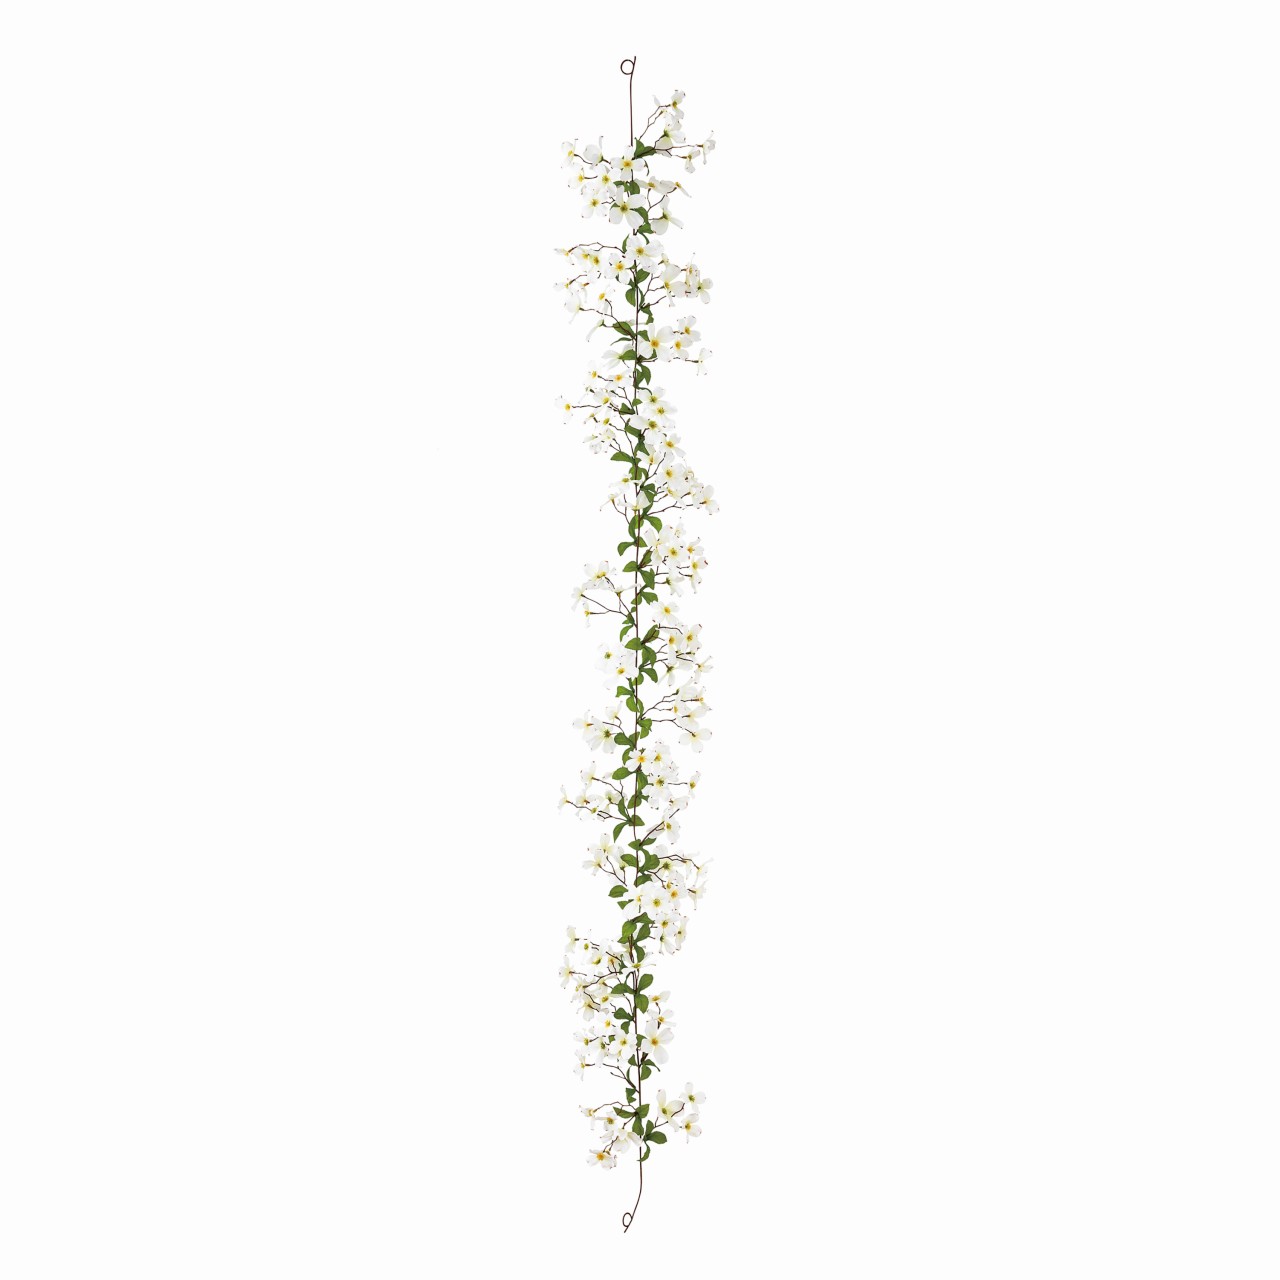 マイフラ 通販 Magiq ブラン花みずきガーランド ホワイト アーティフィシャルフラワー 造花 Fm ハナミズキ 花径 約6 8 長さ 約180cm ホワイト Magiq アーティフィシャルフラワー 造花 全国にmagiq 花器 花資材などをお届けします